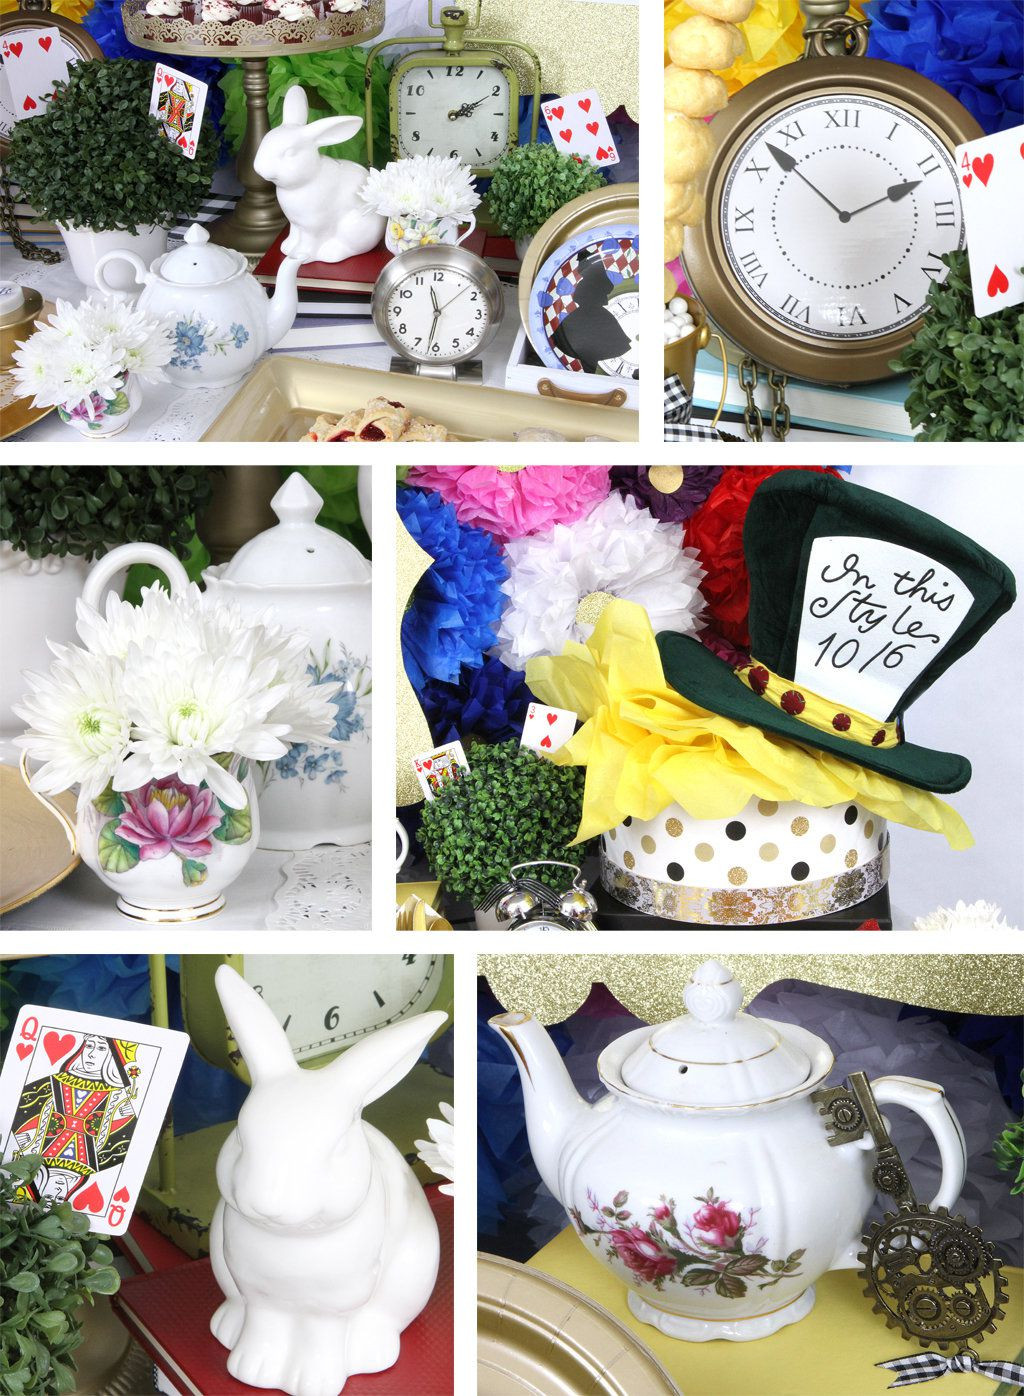 Best ideas about Alice In Wonderland Birthday Party
. Save or Pin Alice In Wonderland Party Ideas Now.